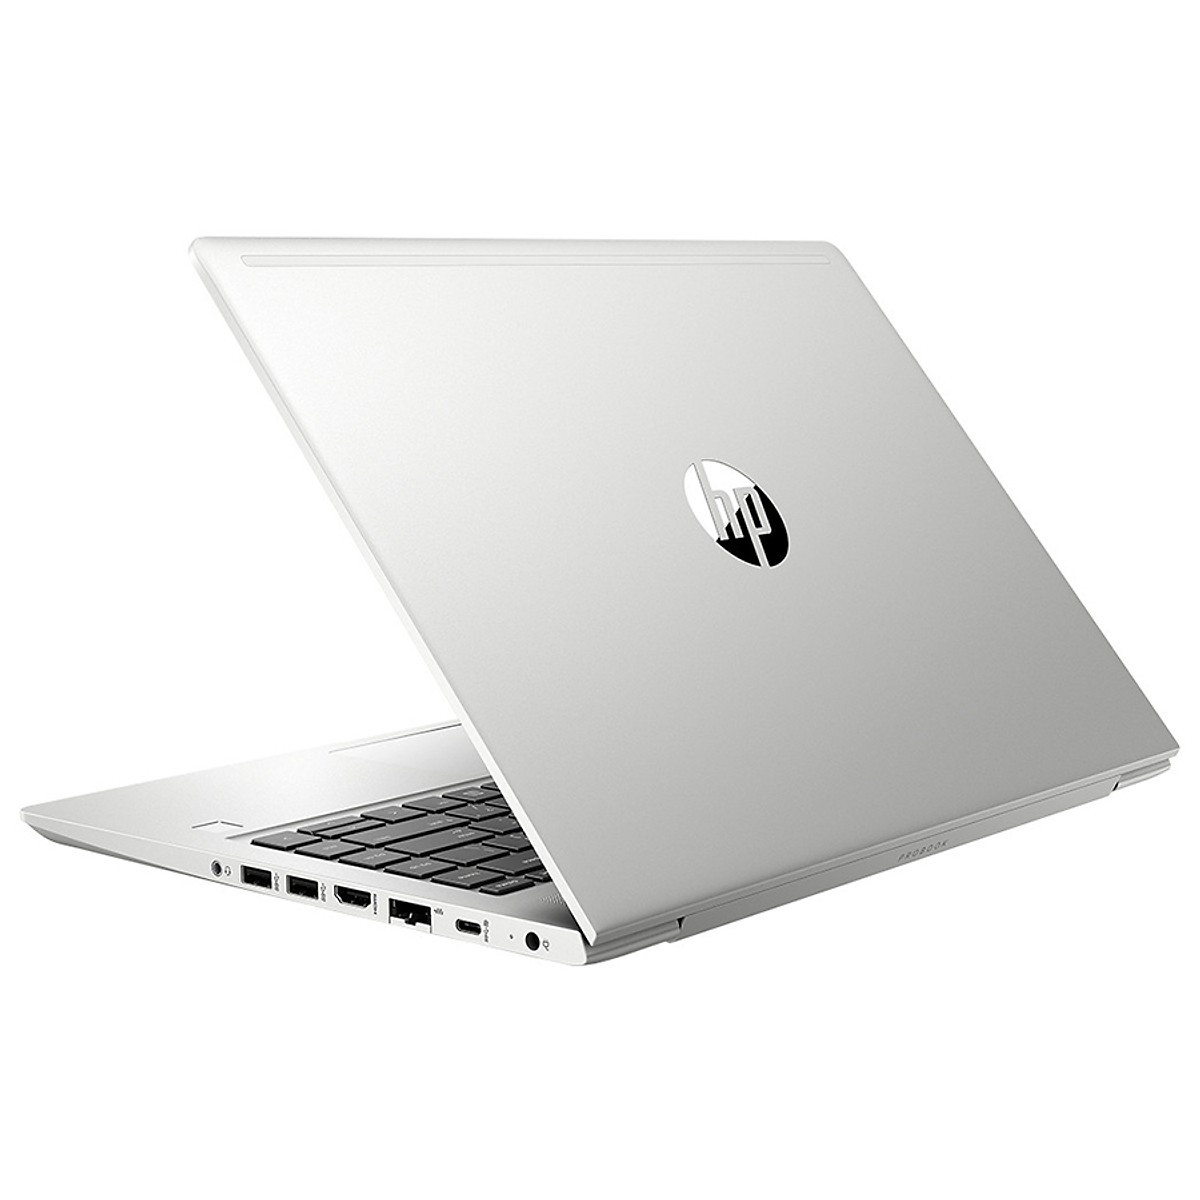 Laptop HP ProBook 440 G6 5YM63PA (Silver)